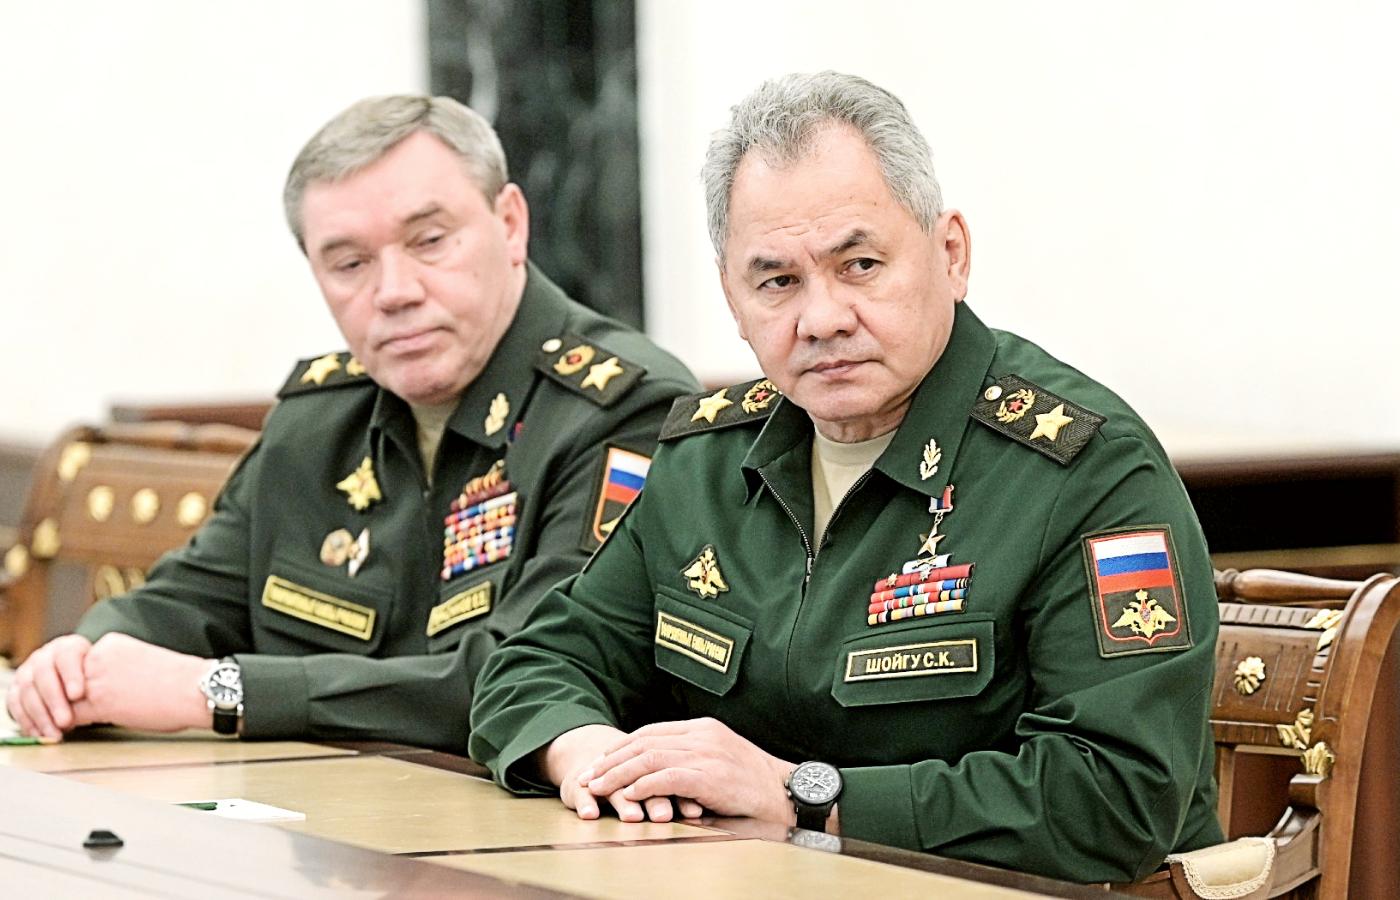 Rosyjski szef sztabu gen. Walery Gierasimow i minister obrony Siergiej Szojgu na spotkaniu z Władimirem Putinem